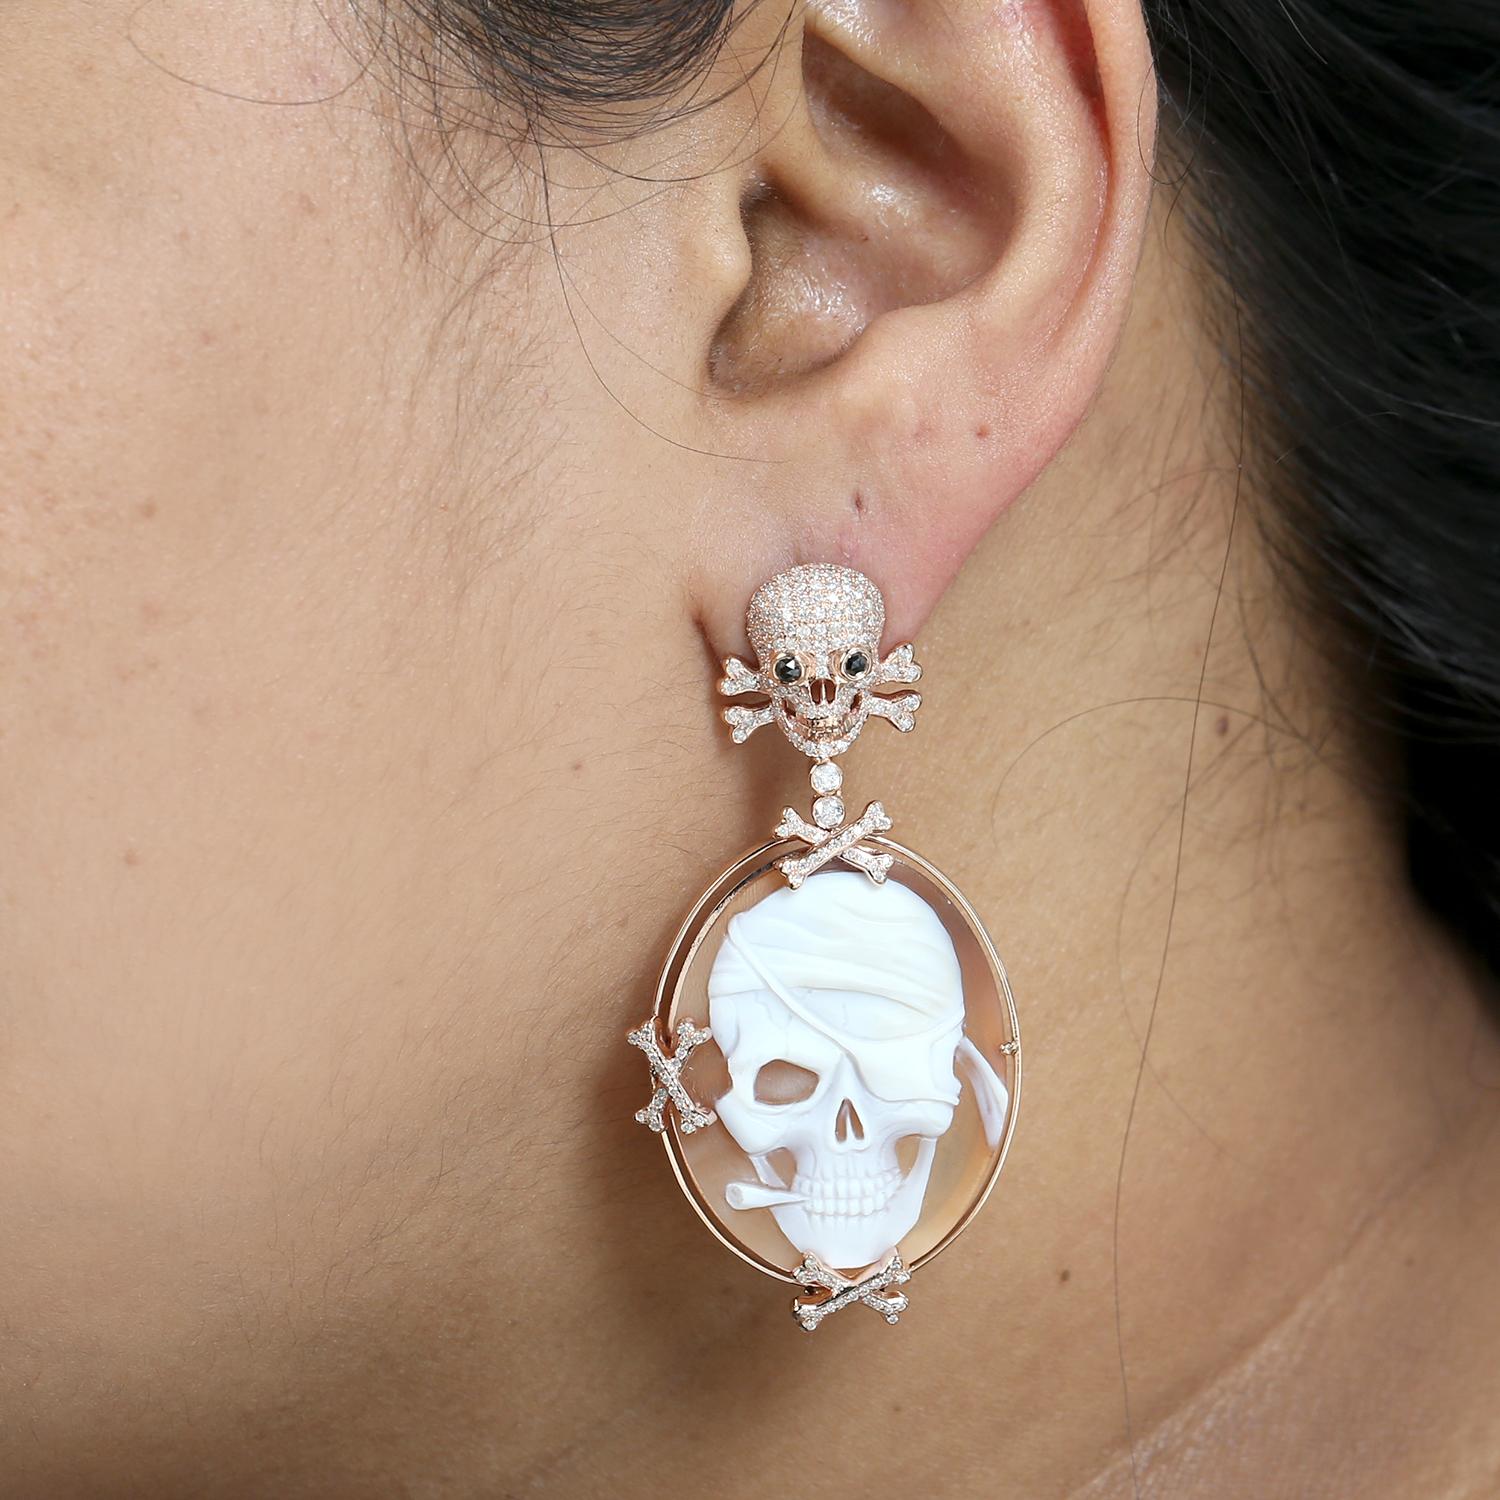 pave skeleton earrings